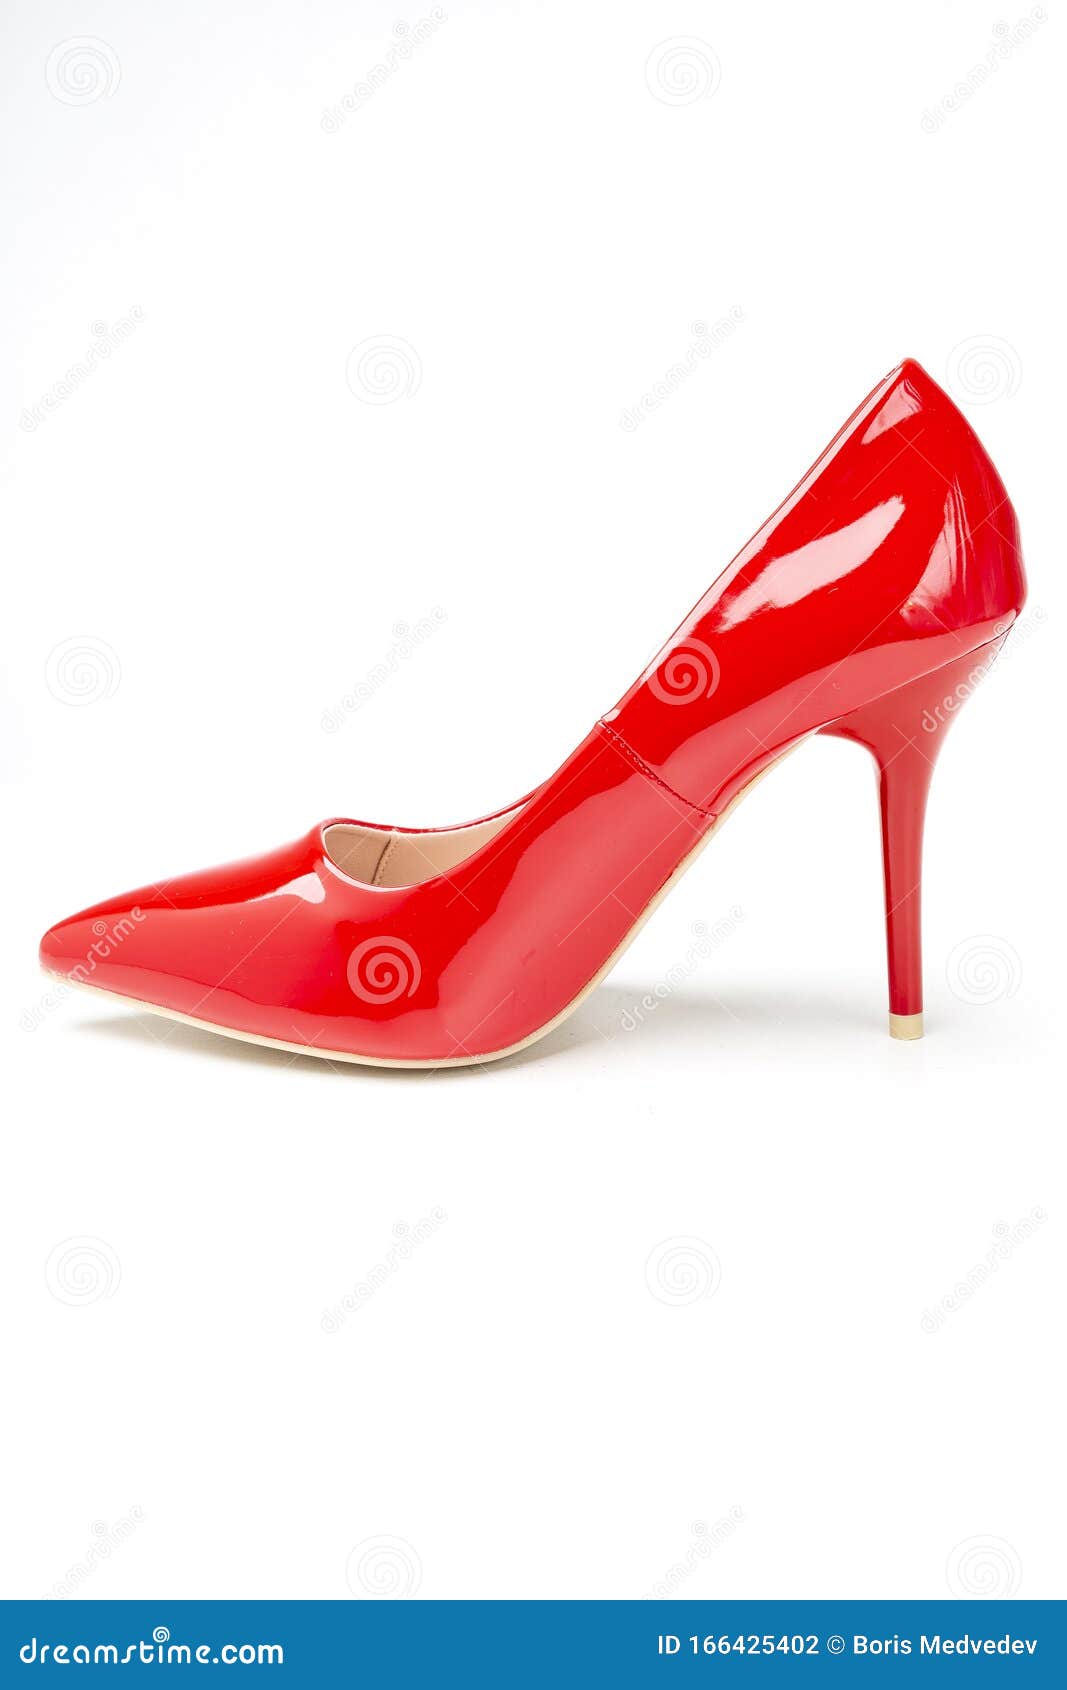 Zapatos De Tacón Alto Las Mujeres Color Rojo Foto de archivo - Imagen de alto, 166425402